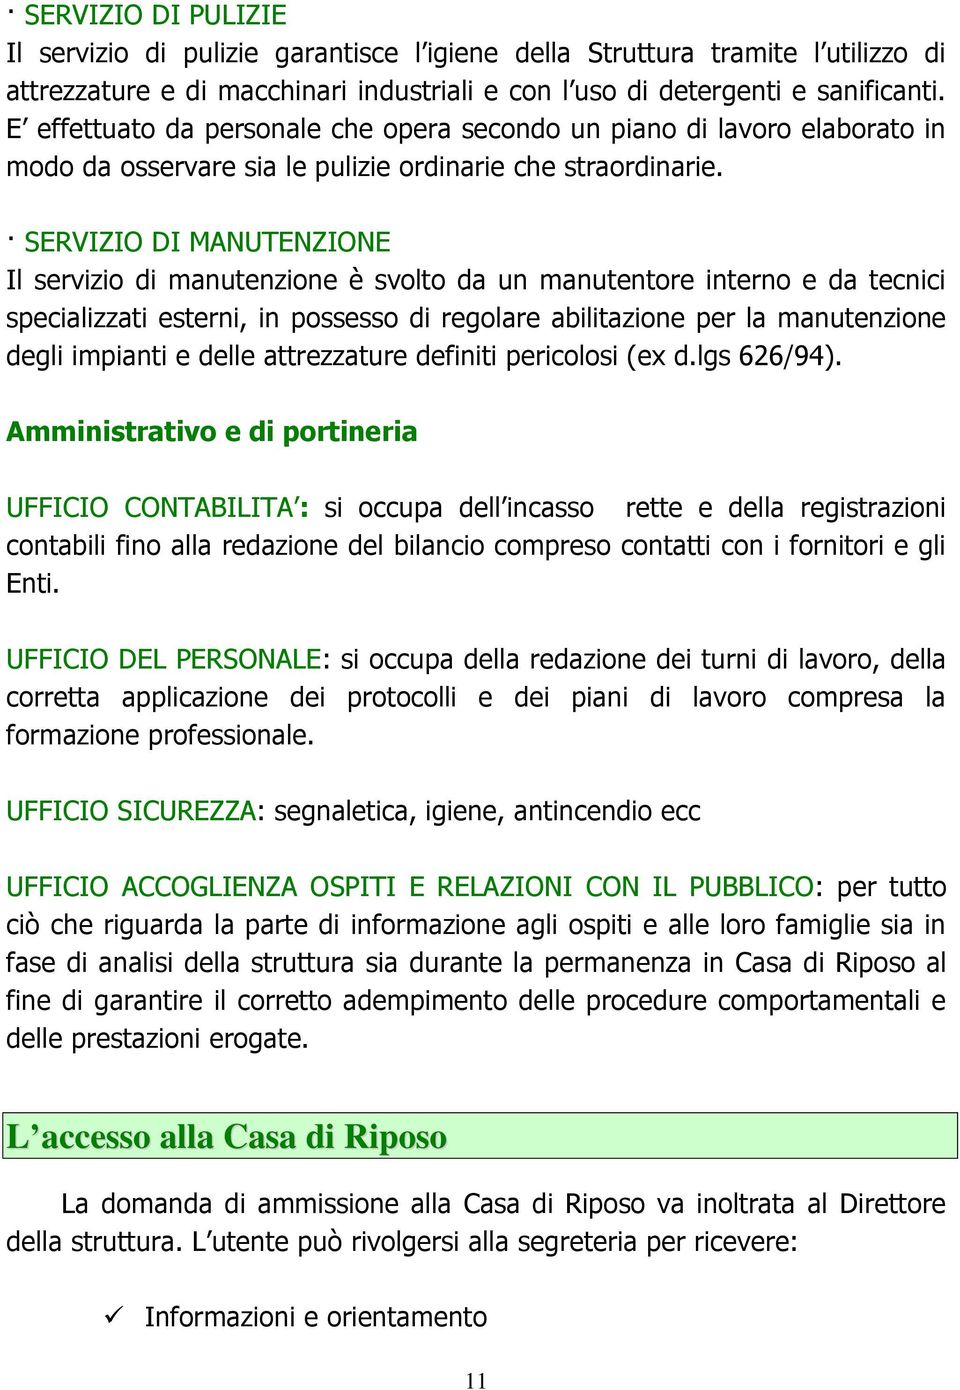 Via Mazzini Pontecurone Al Carta Dei Servizi La Carta Dei Servizi 4 Pdf Free Download